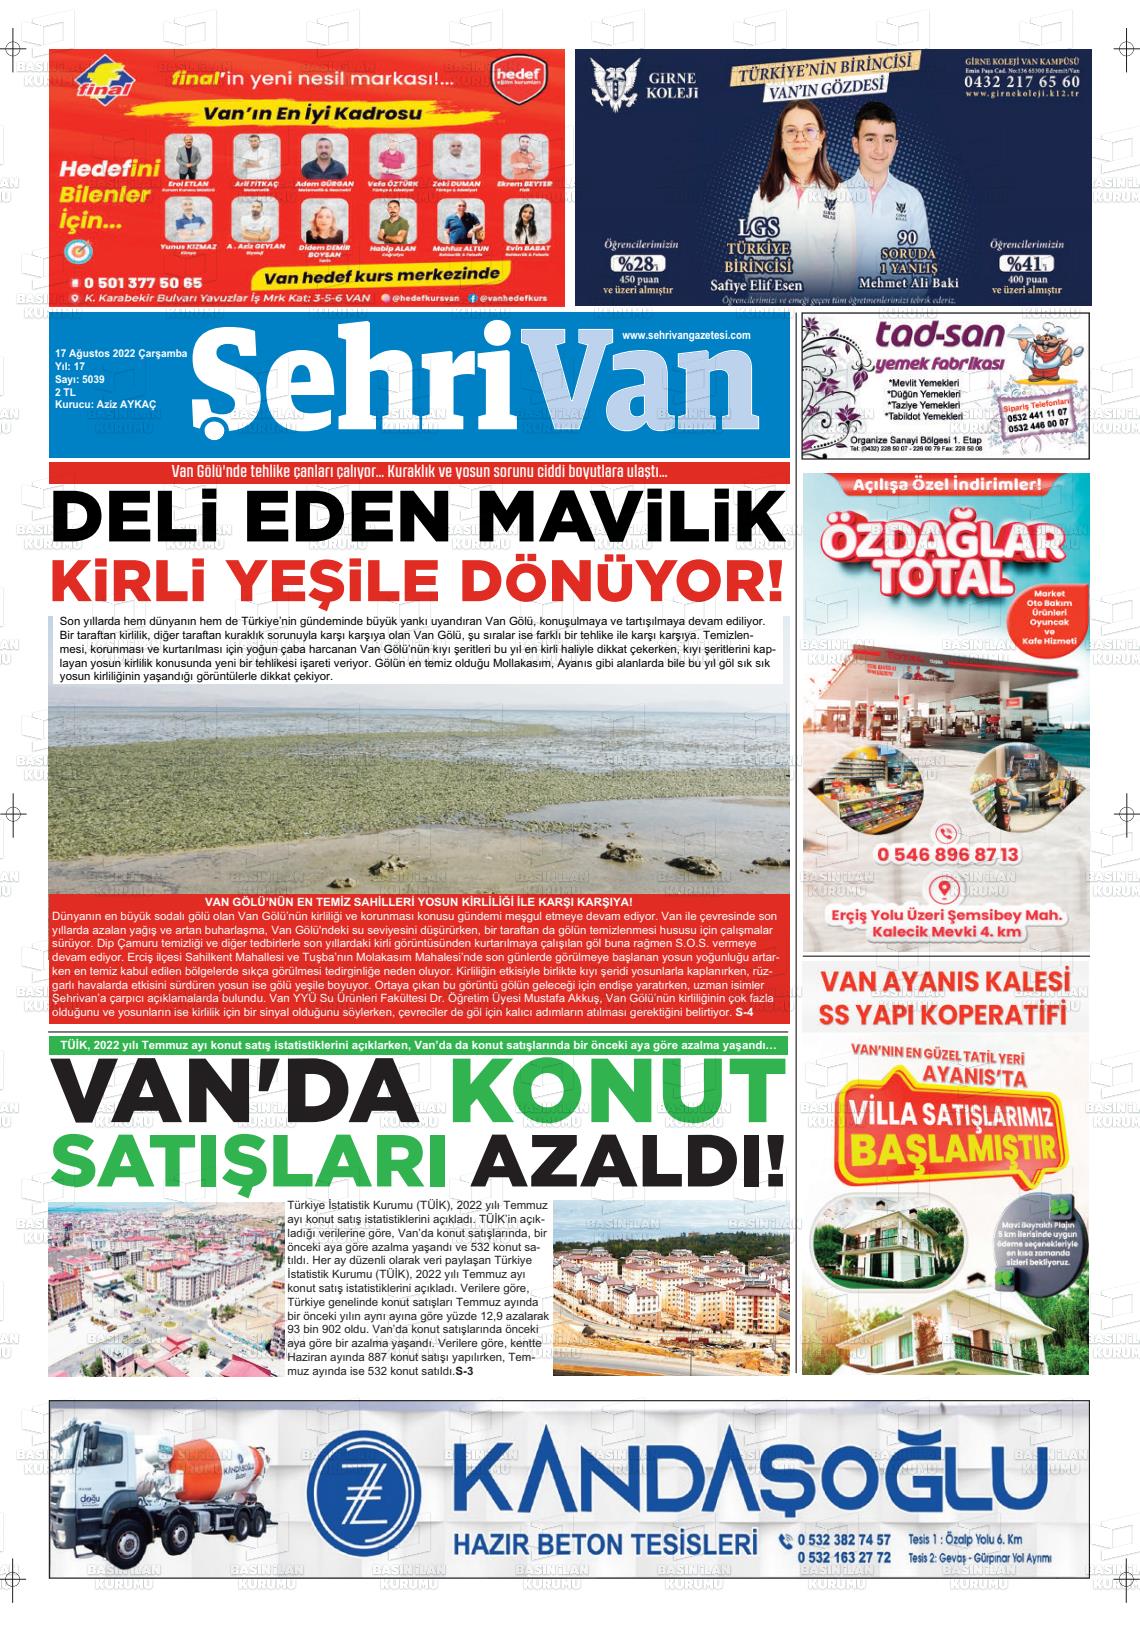 17 Ağustos 2022 Şehrivan Gazete Manşeti